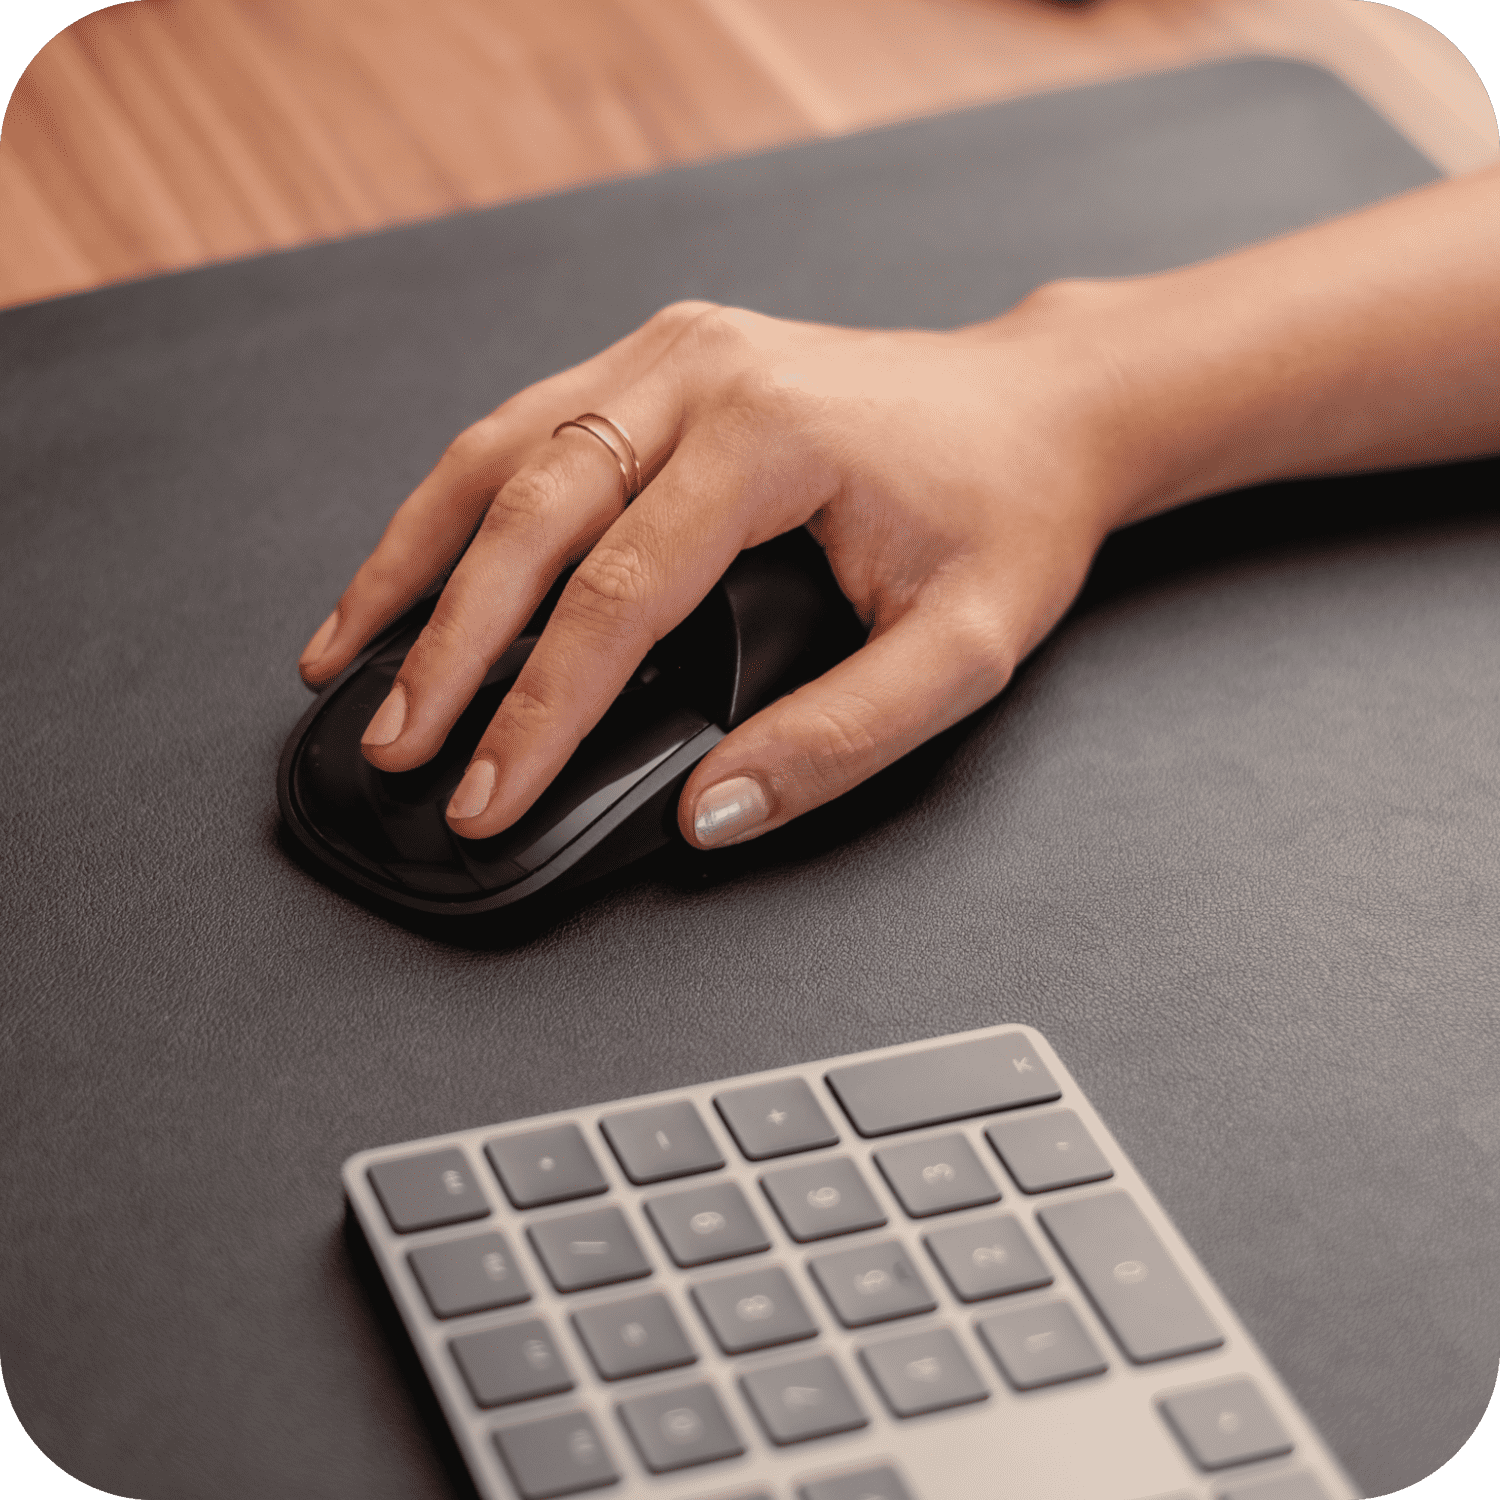 Solumics.Case - L'aggiornamento ergonomico per il tuo Mouse iMac.